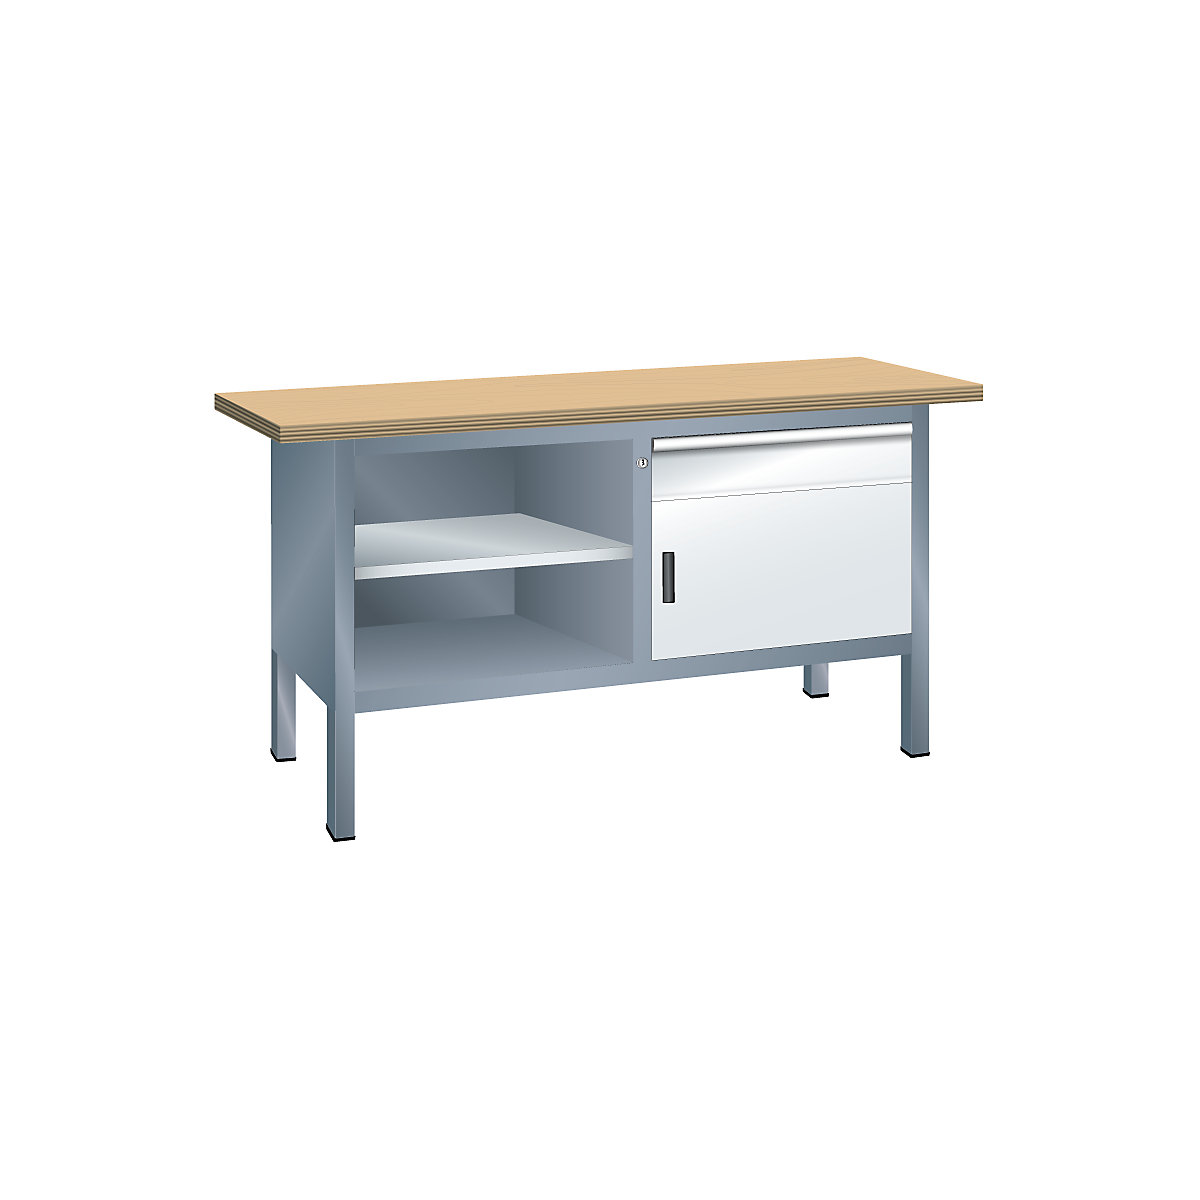 Dílenský stůl s deskou z překližky Multiplex, rámová konstrukce – LISTA, 1 zásuvka, 1 dveře, 3 police, korpus šedá metalíza, čelo světlá šedá-10